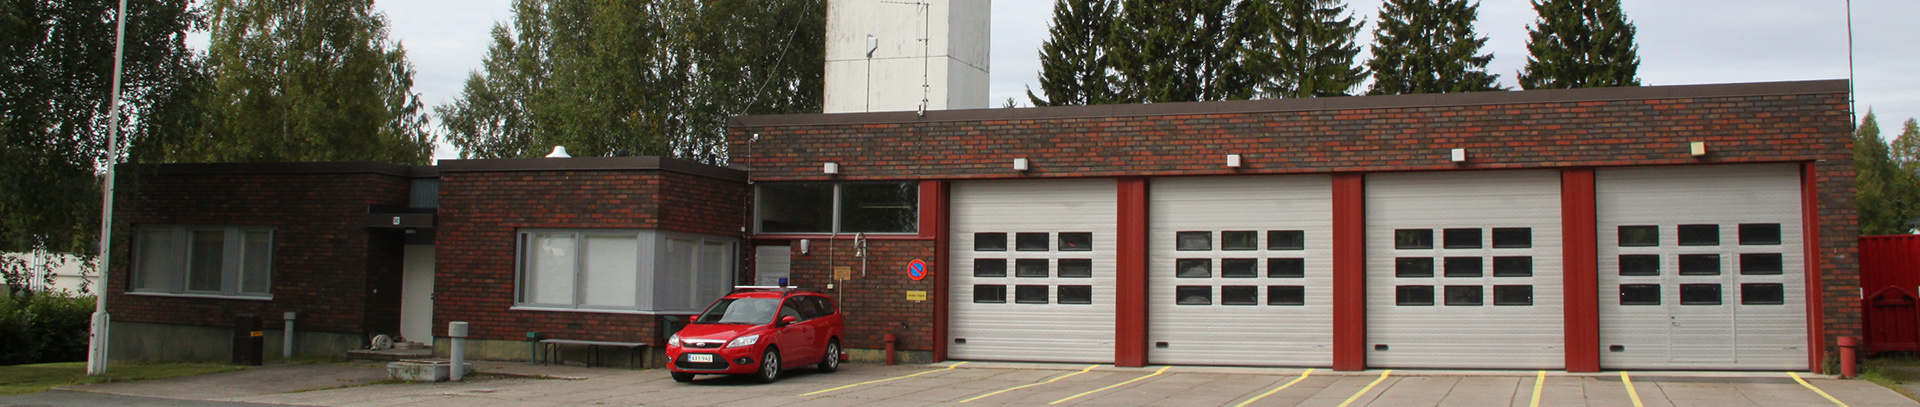 Juvan punatiilinen paloasema, jossa vasemmalla toimistotilat ja oikealla kalustohalli isoine nosto-ovineen.